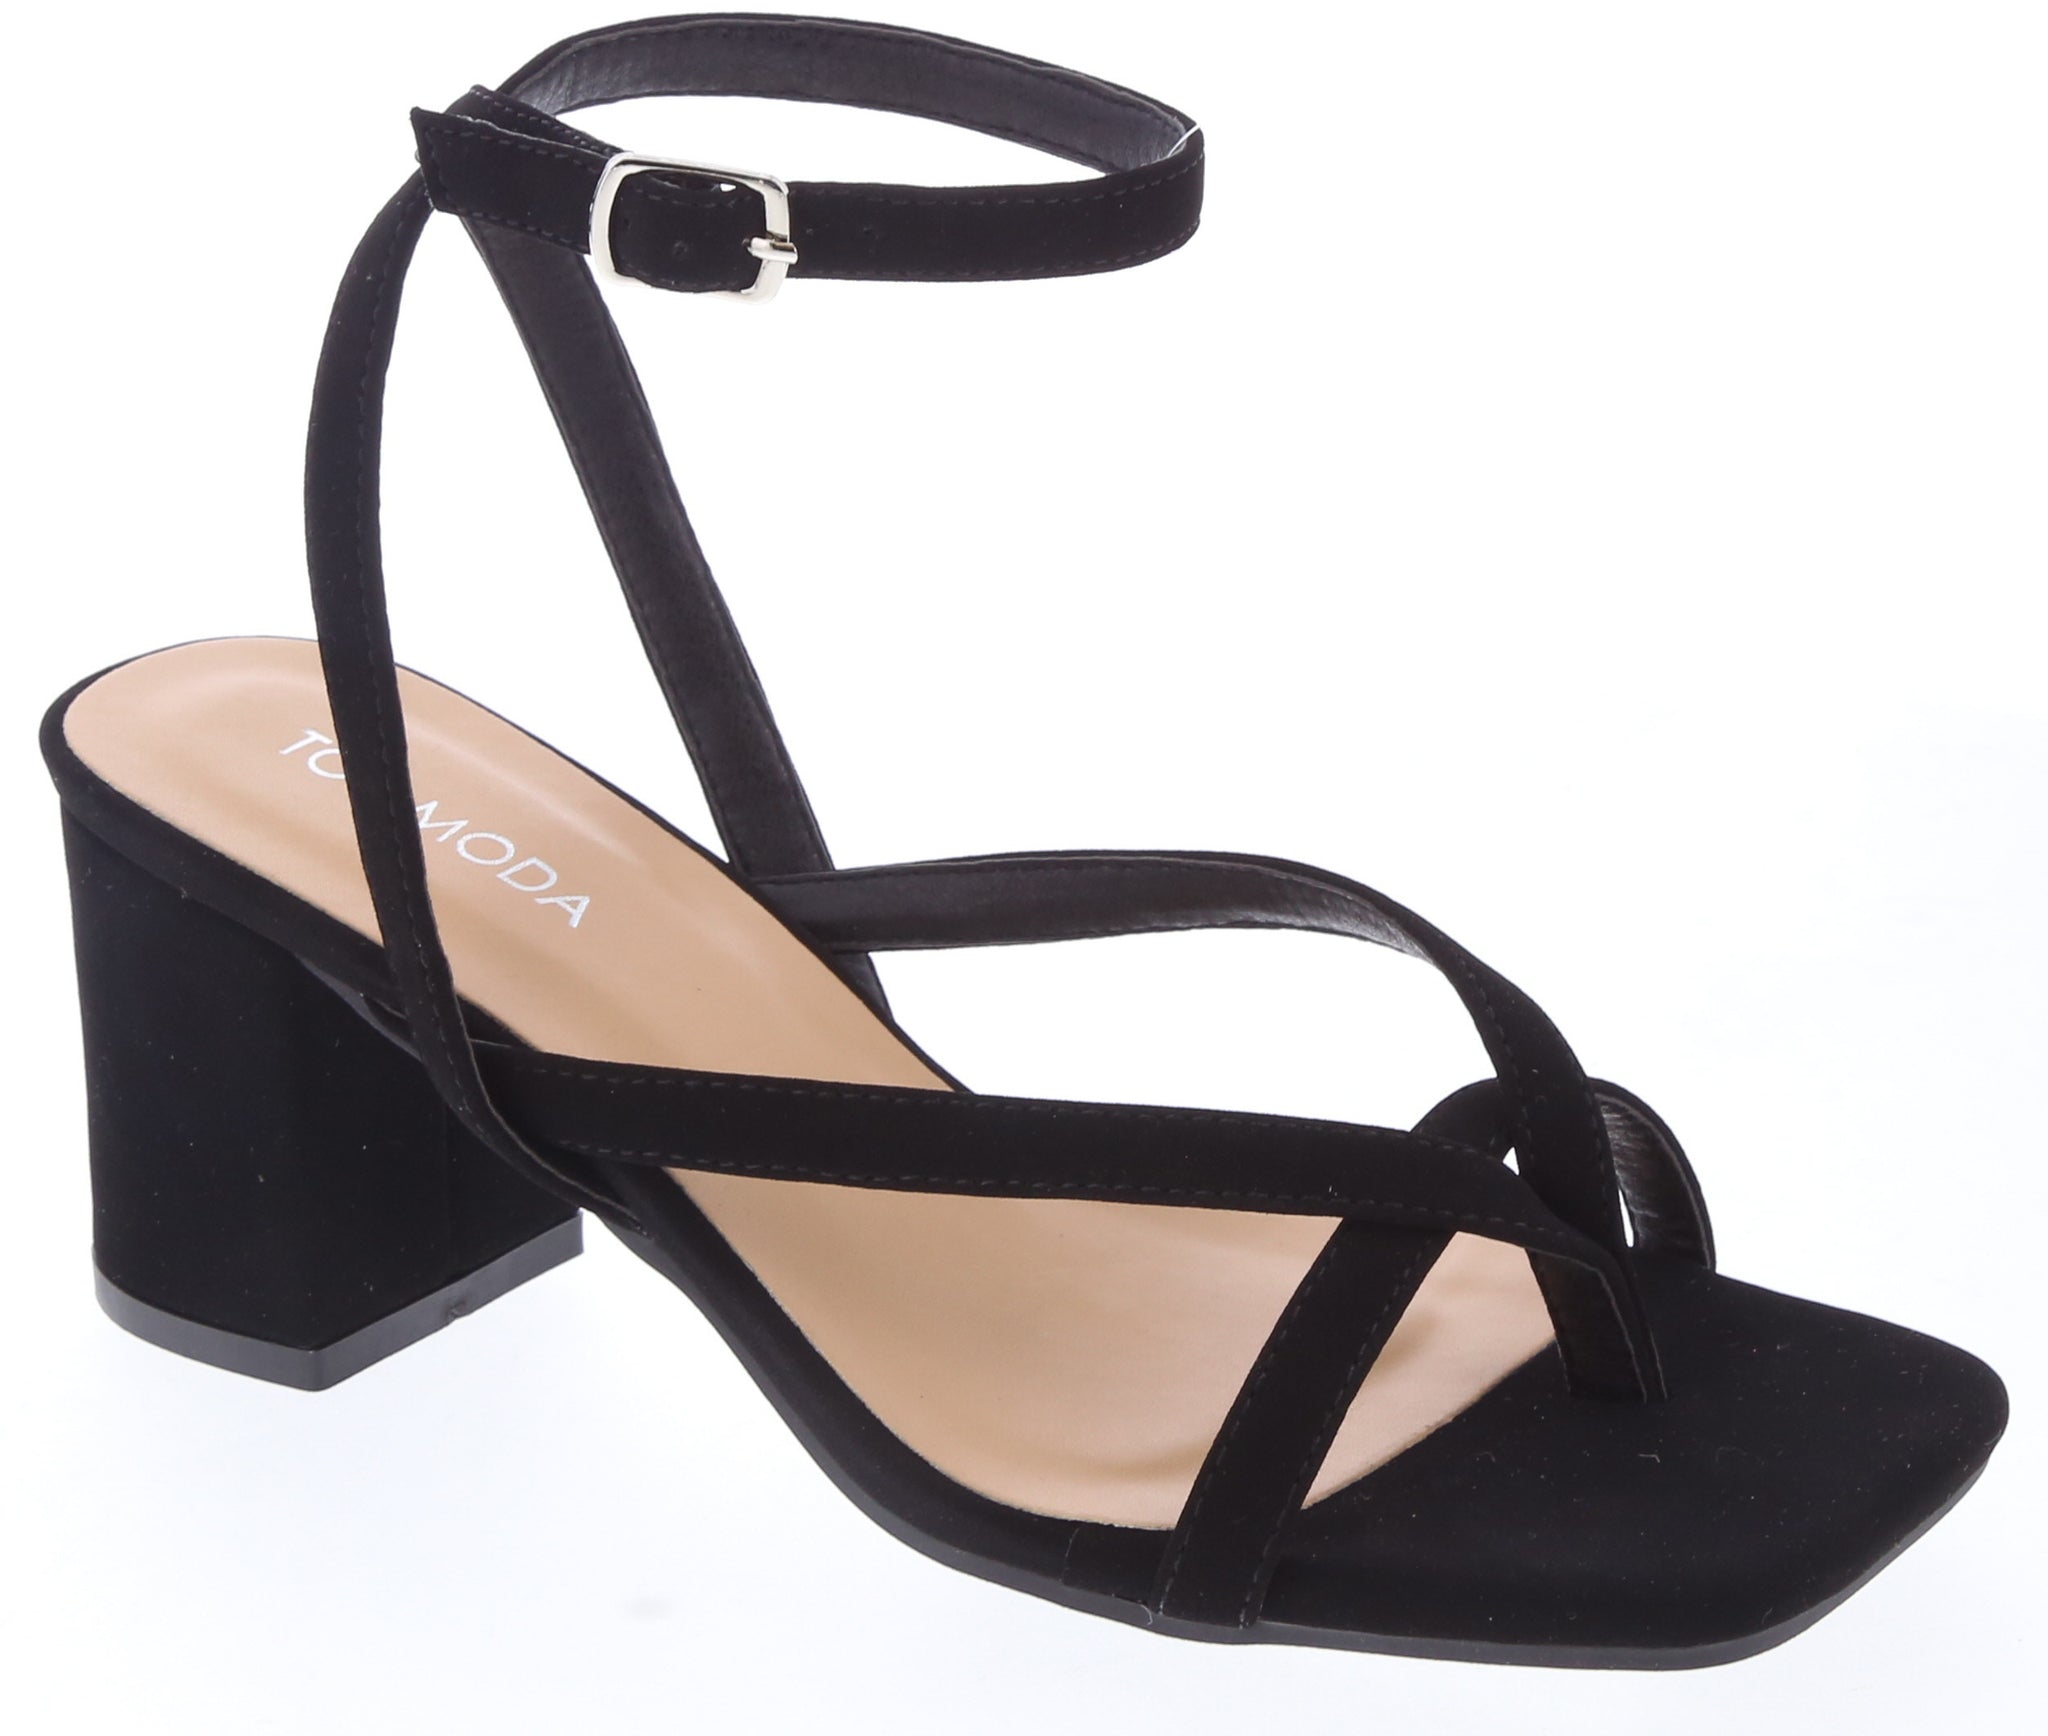 black dress sandals low heel